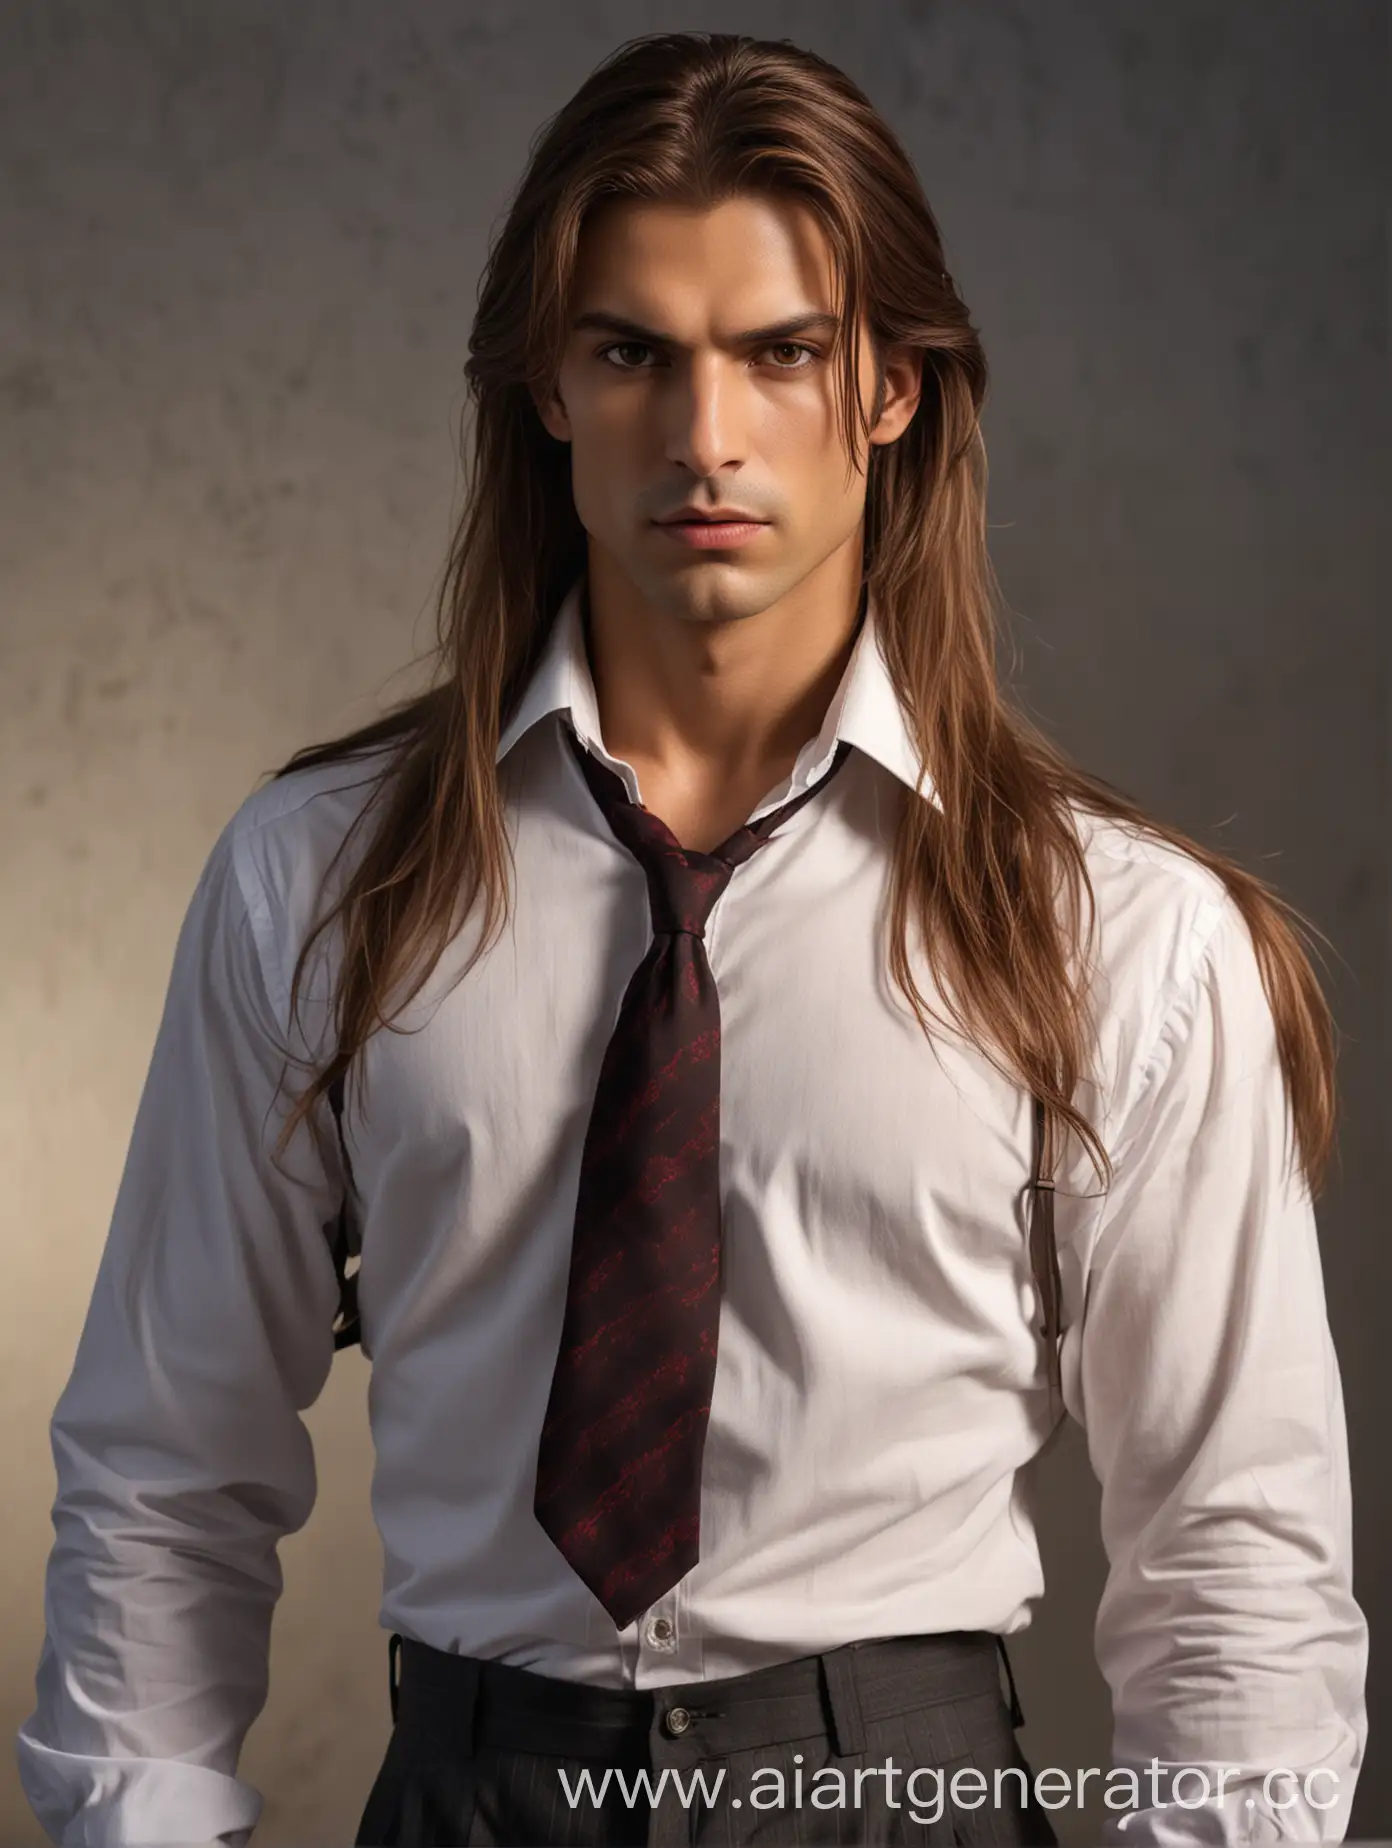 Высокий вампир, властный император, одетый в рубашку с галстуком и брюки, длинные каштановые волосы, карие глаза, слегка смуглая кожа, волевой взгляд,